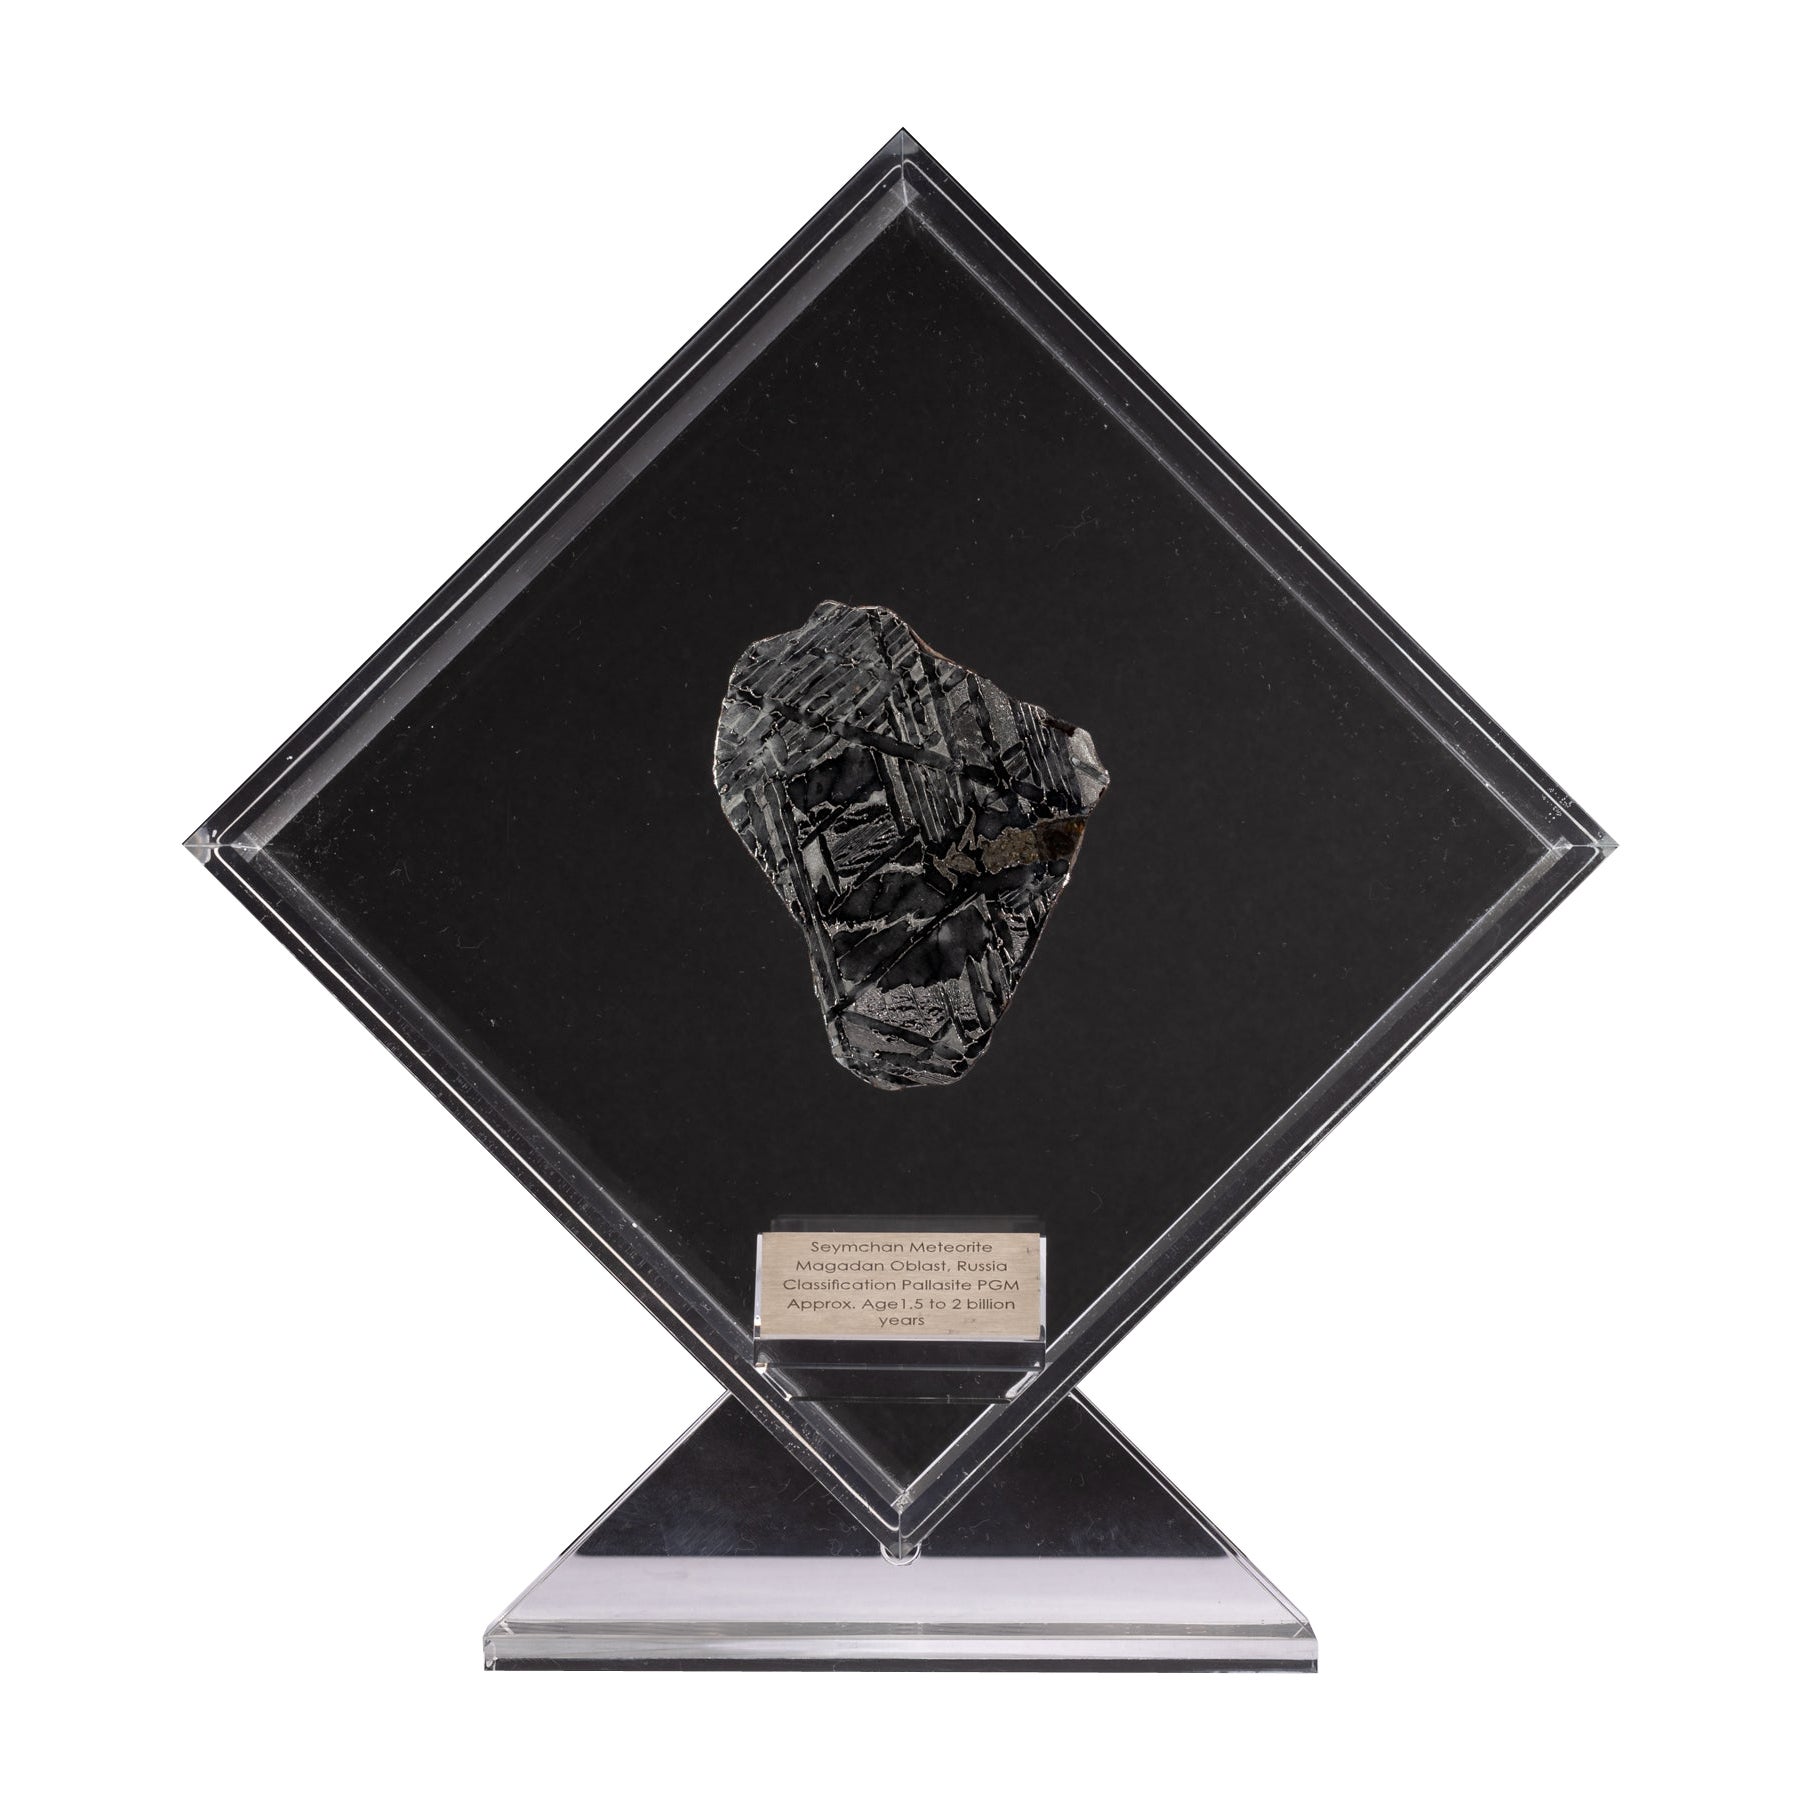 Conception originale de Seymchan avec une météorite olivienne dans une vitrine en acrylique transparente